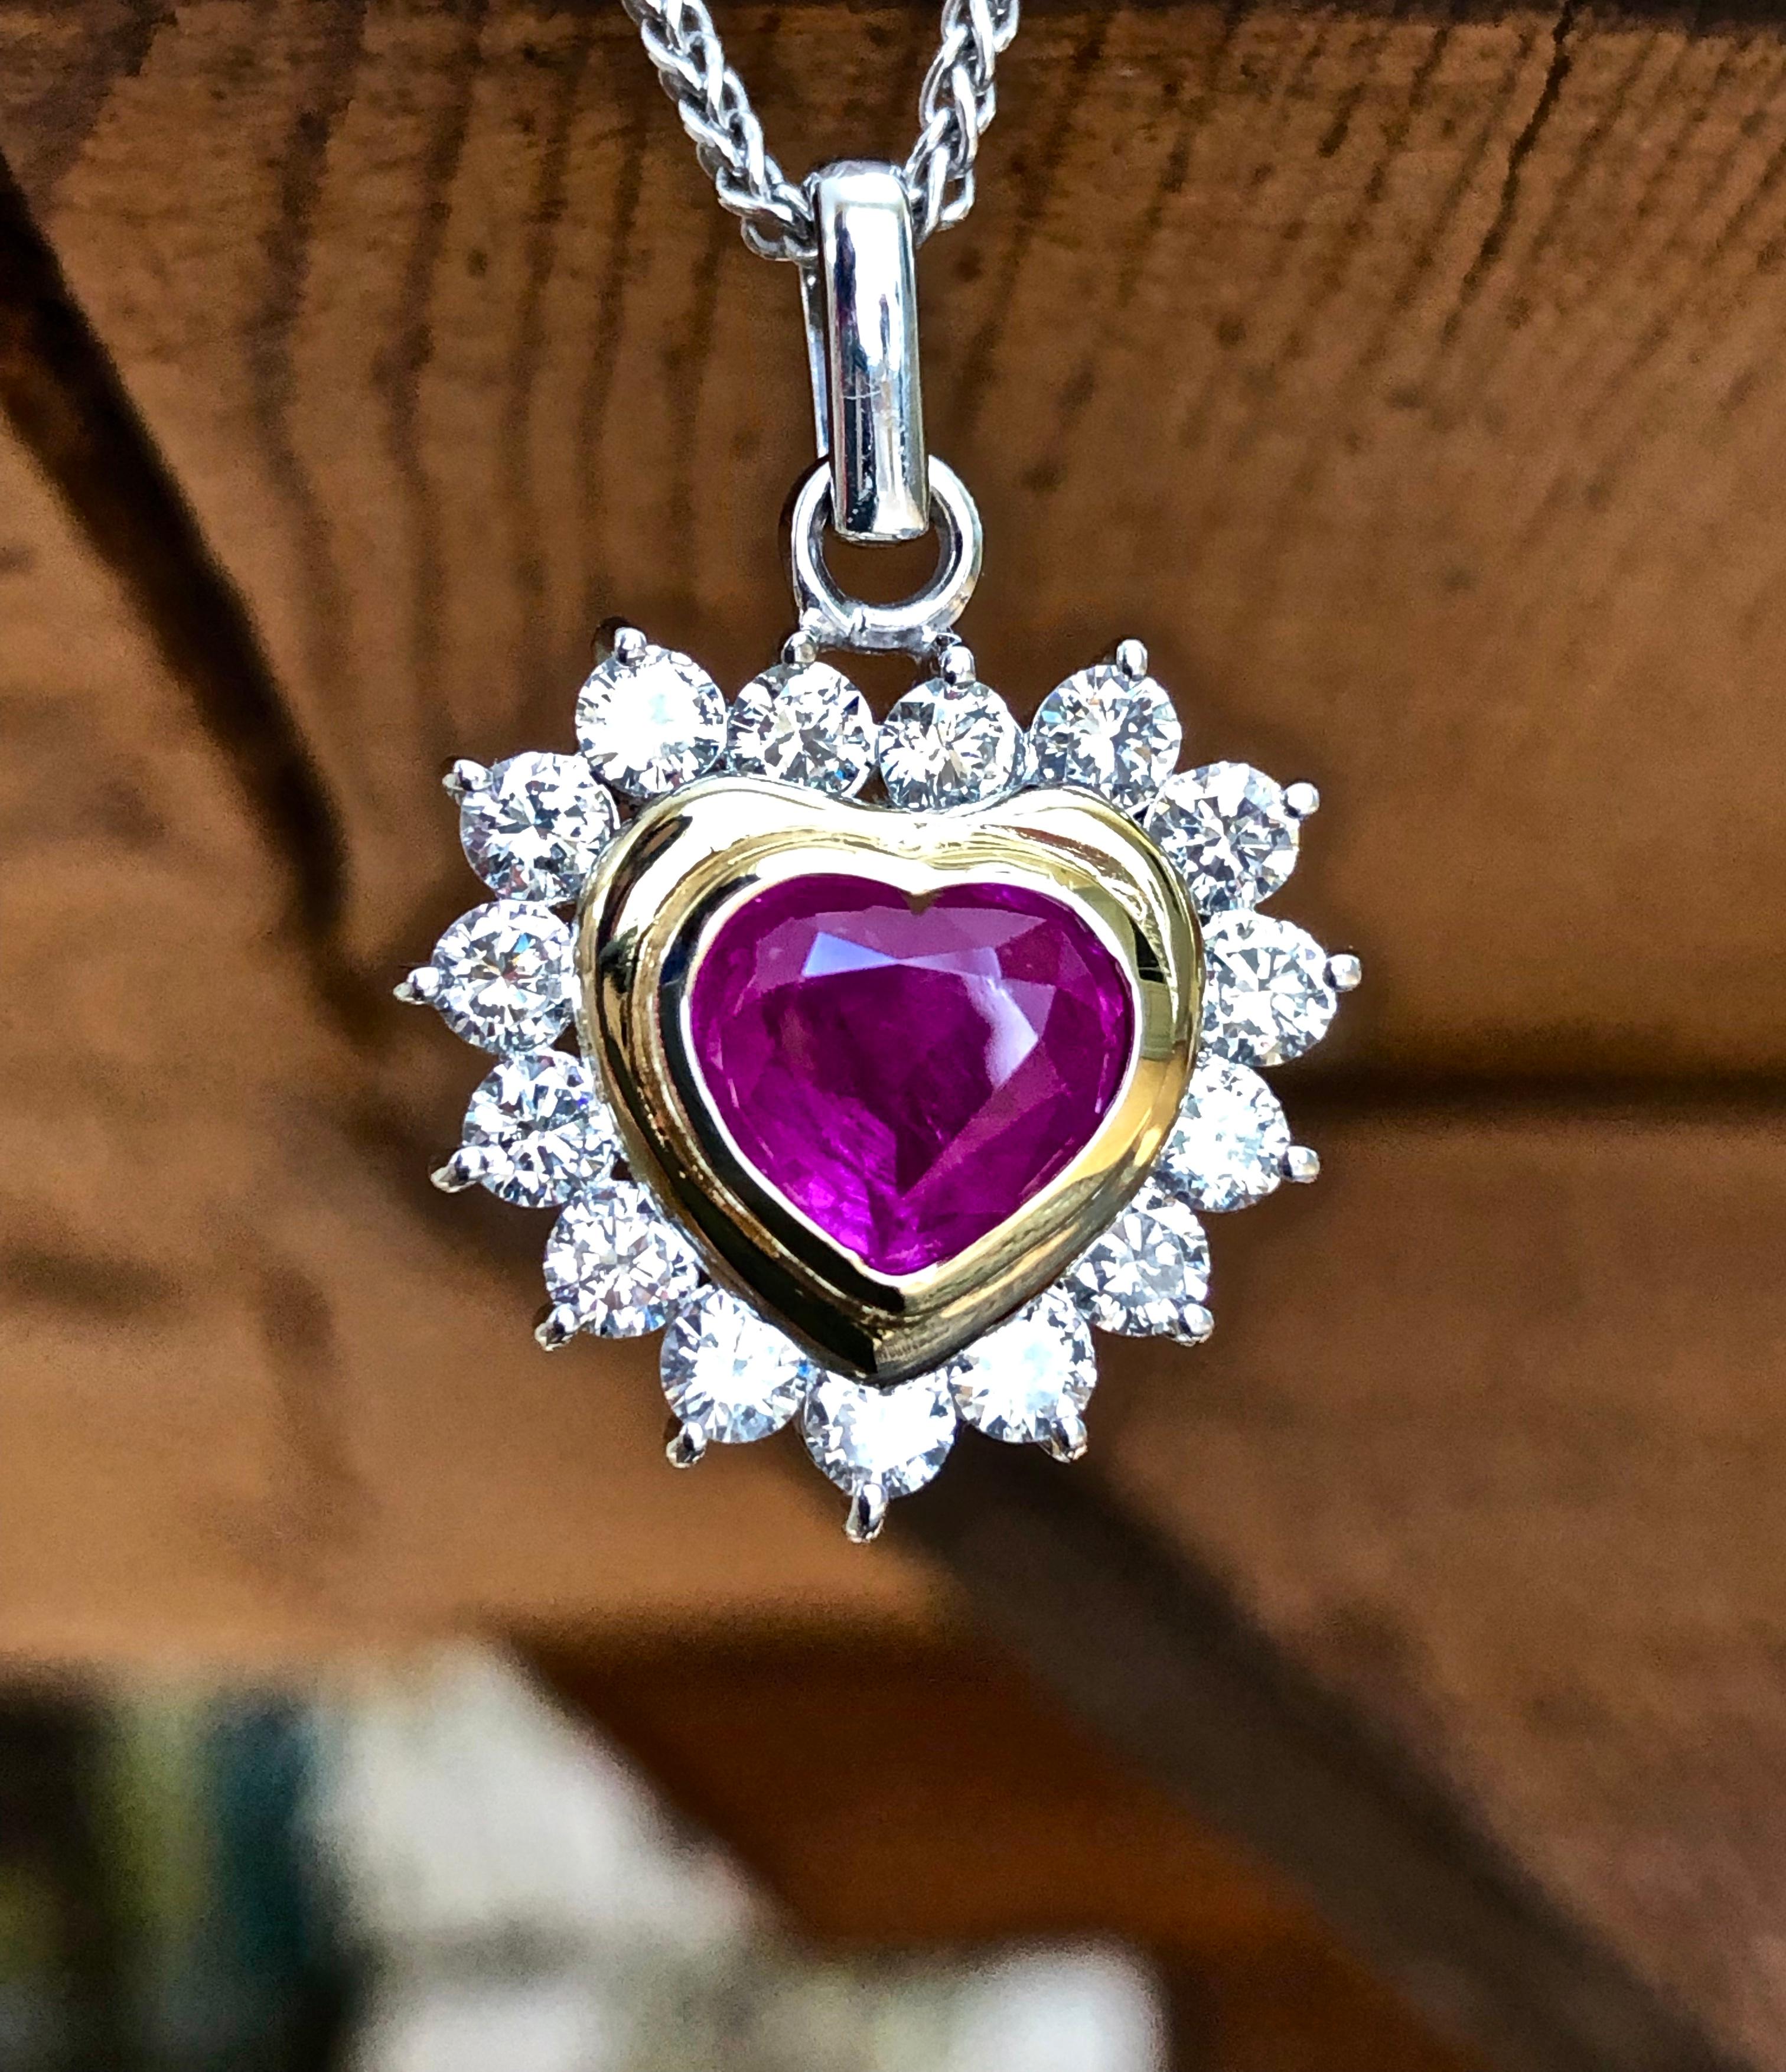 Ce rubis de Birmanie non traité de 2,12 carats en forme de cœur, d'une riche couleur rouge rosé, est serti dans de l'or 18 carats avec 15 diamants blancs ronds totalisant environ 1,38 ct H-SI1. Ce magnifique pendentif en forme de cœur taillé dans un